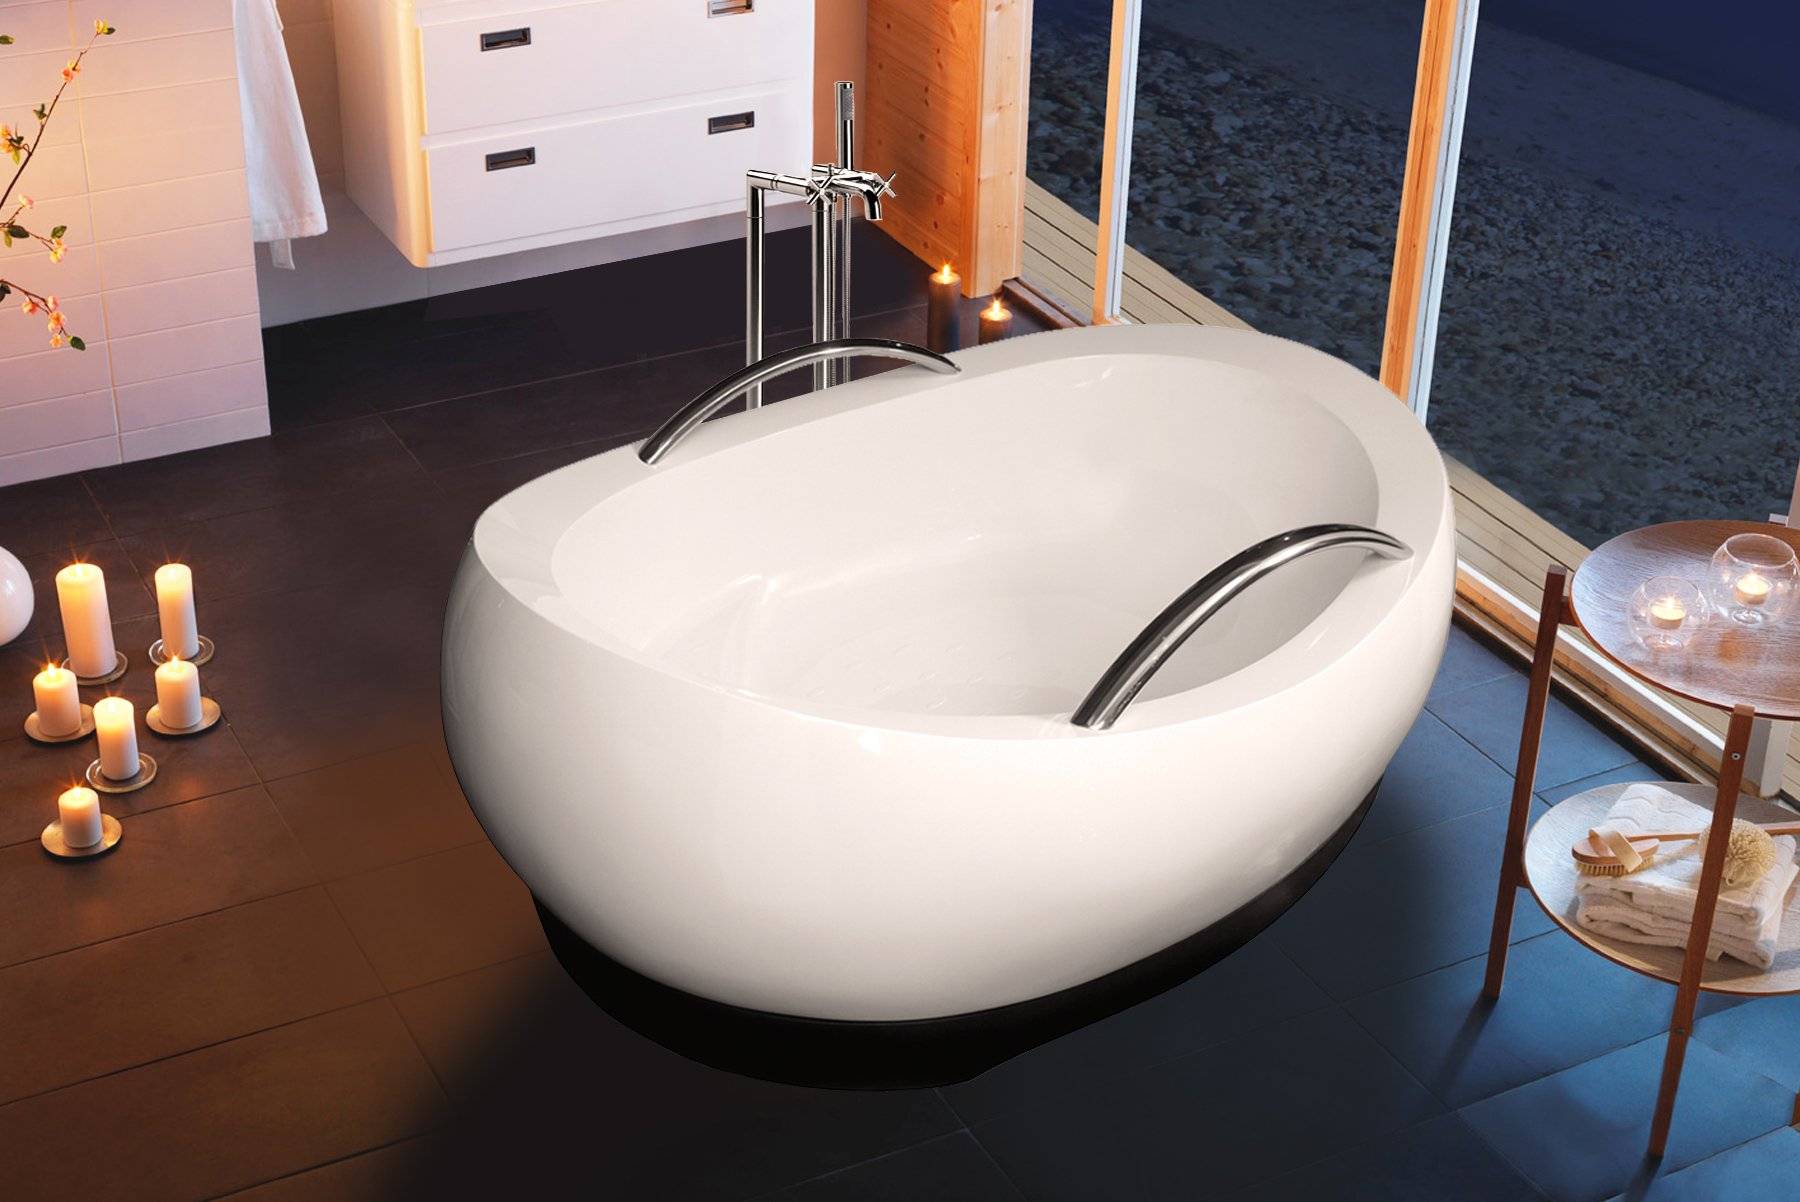 Угловые ванные: выбор ванны и дизайн комнаты